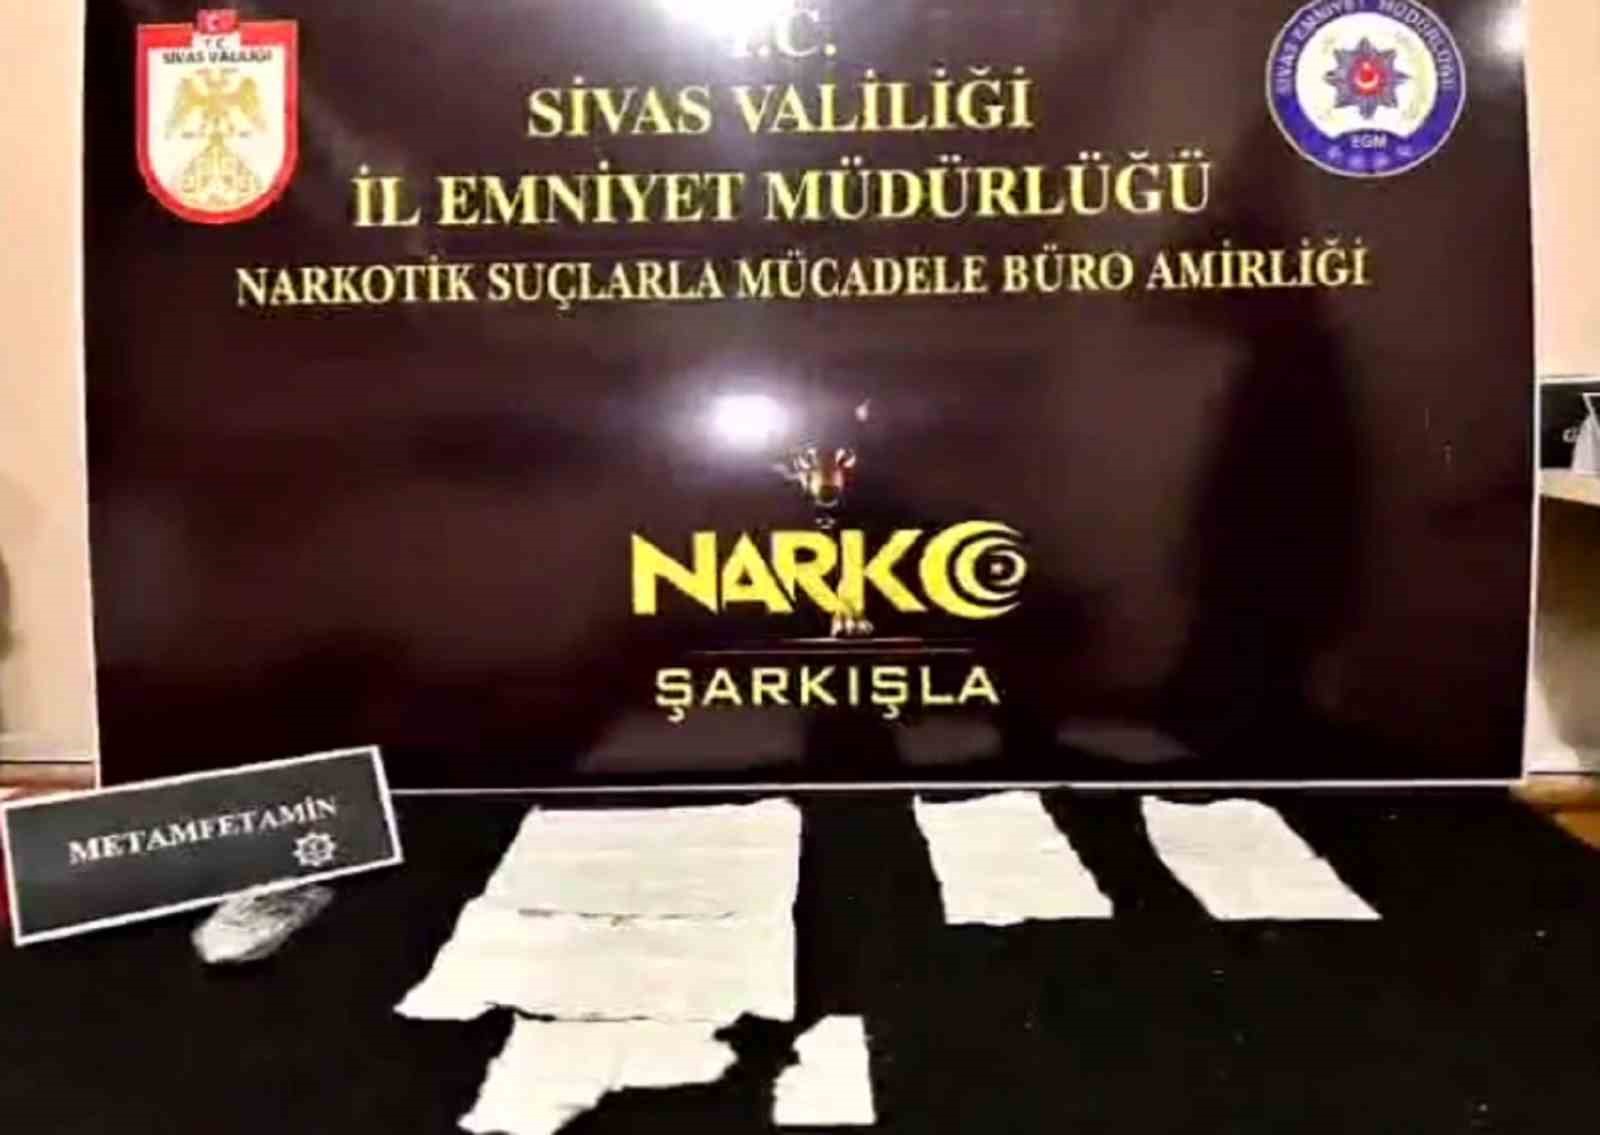 Sivas’ta 3 ayrı uyuşturucu operasyonu: 10 tutuklama
